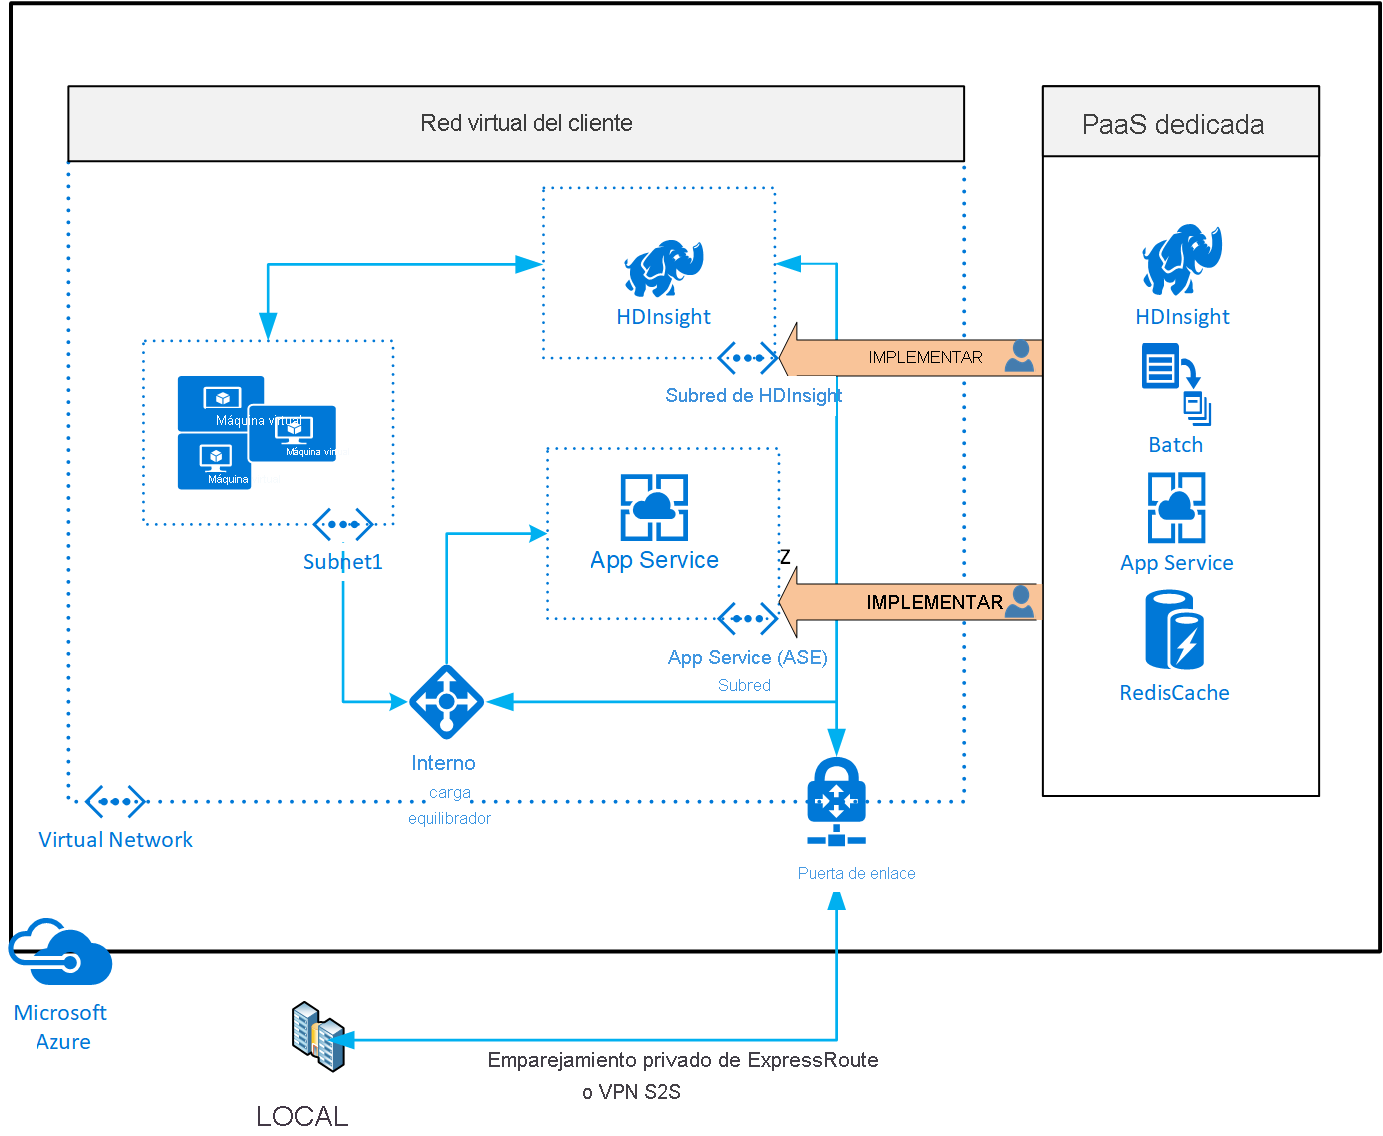 Diagrama de implementación de servicios de Azure dedicados en las redes virtuales.